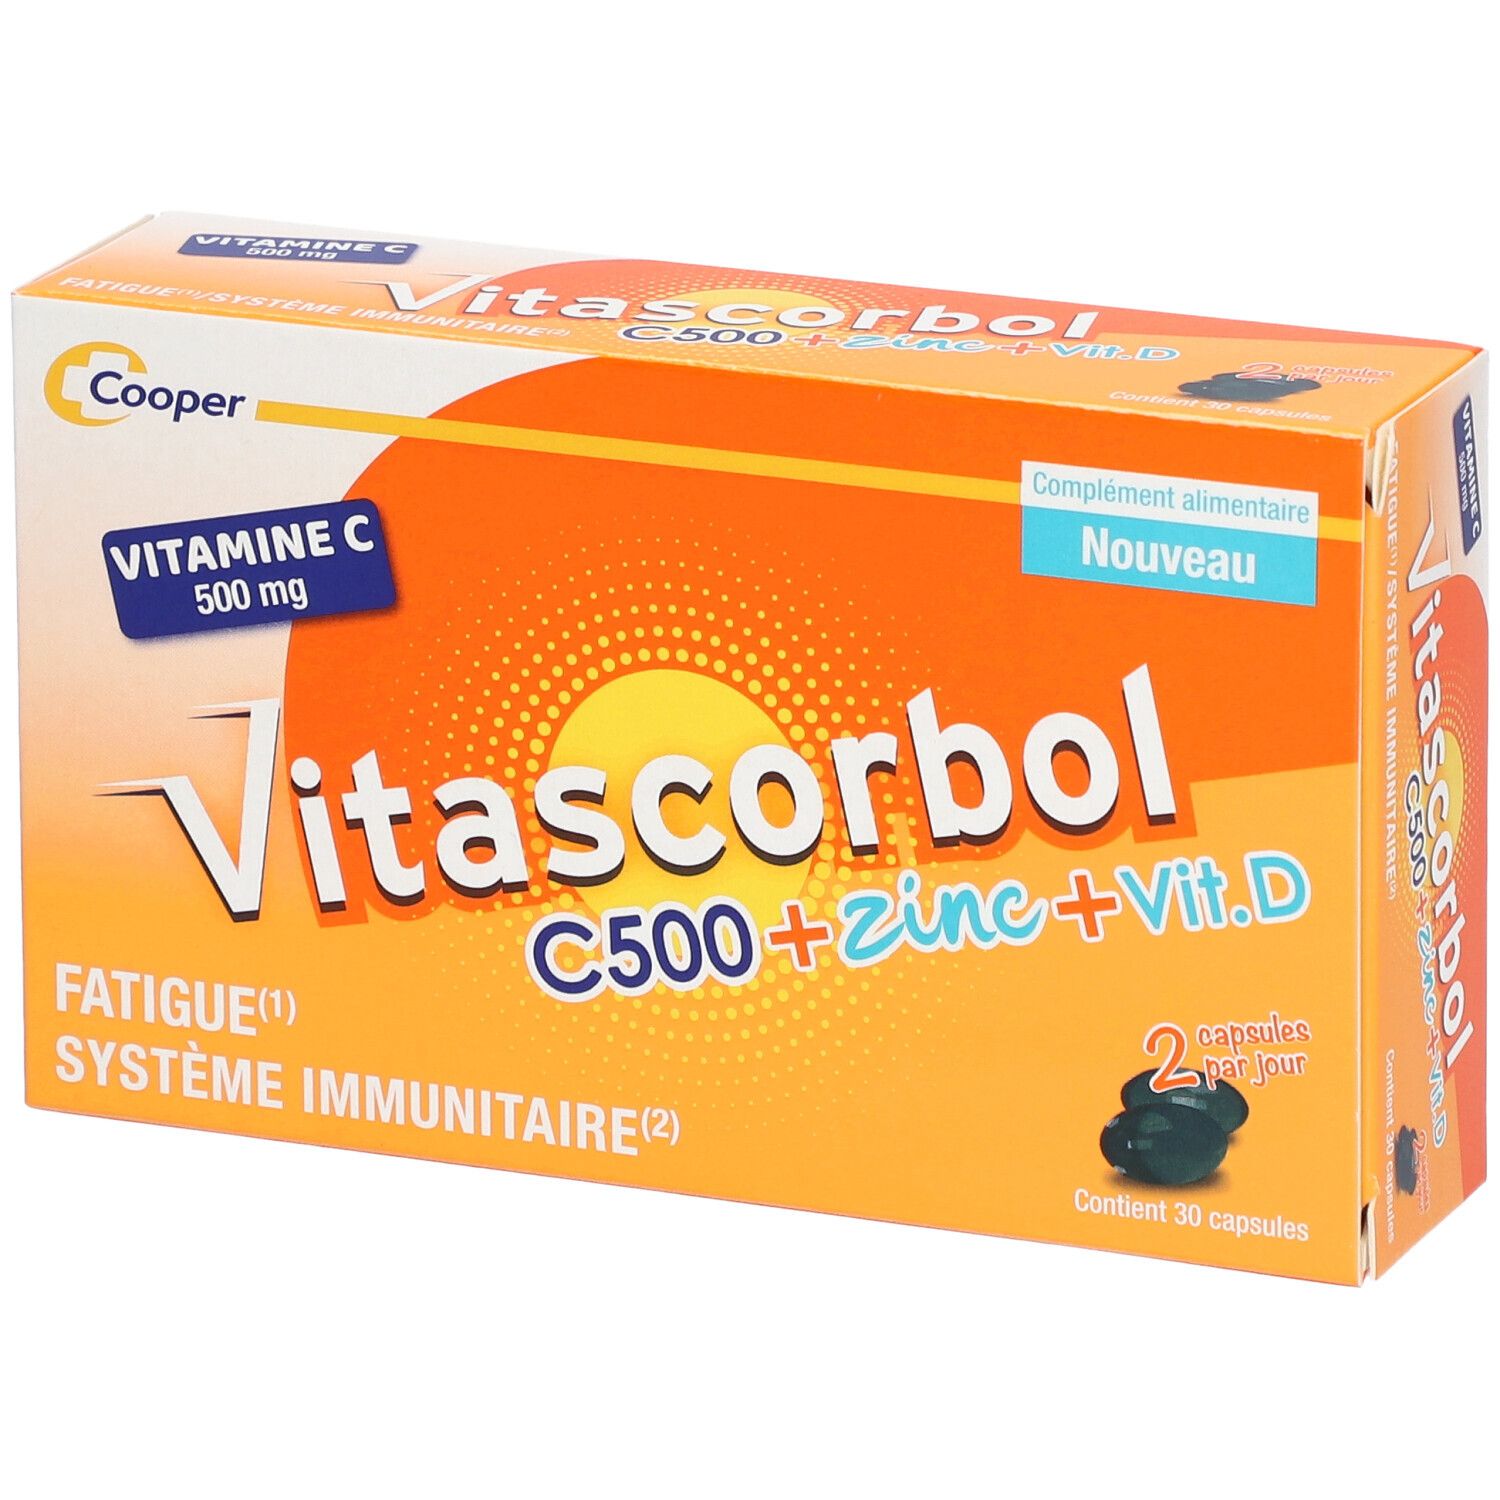 Cooper Vitascorbol C500 + Zinc + Vitamine D